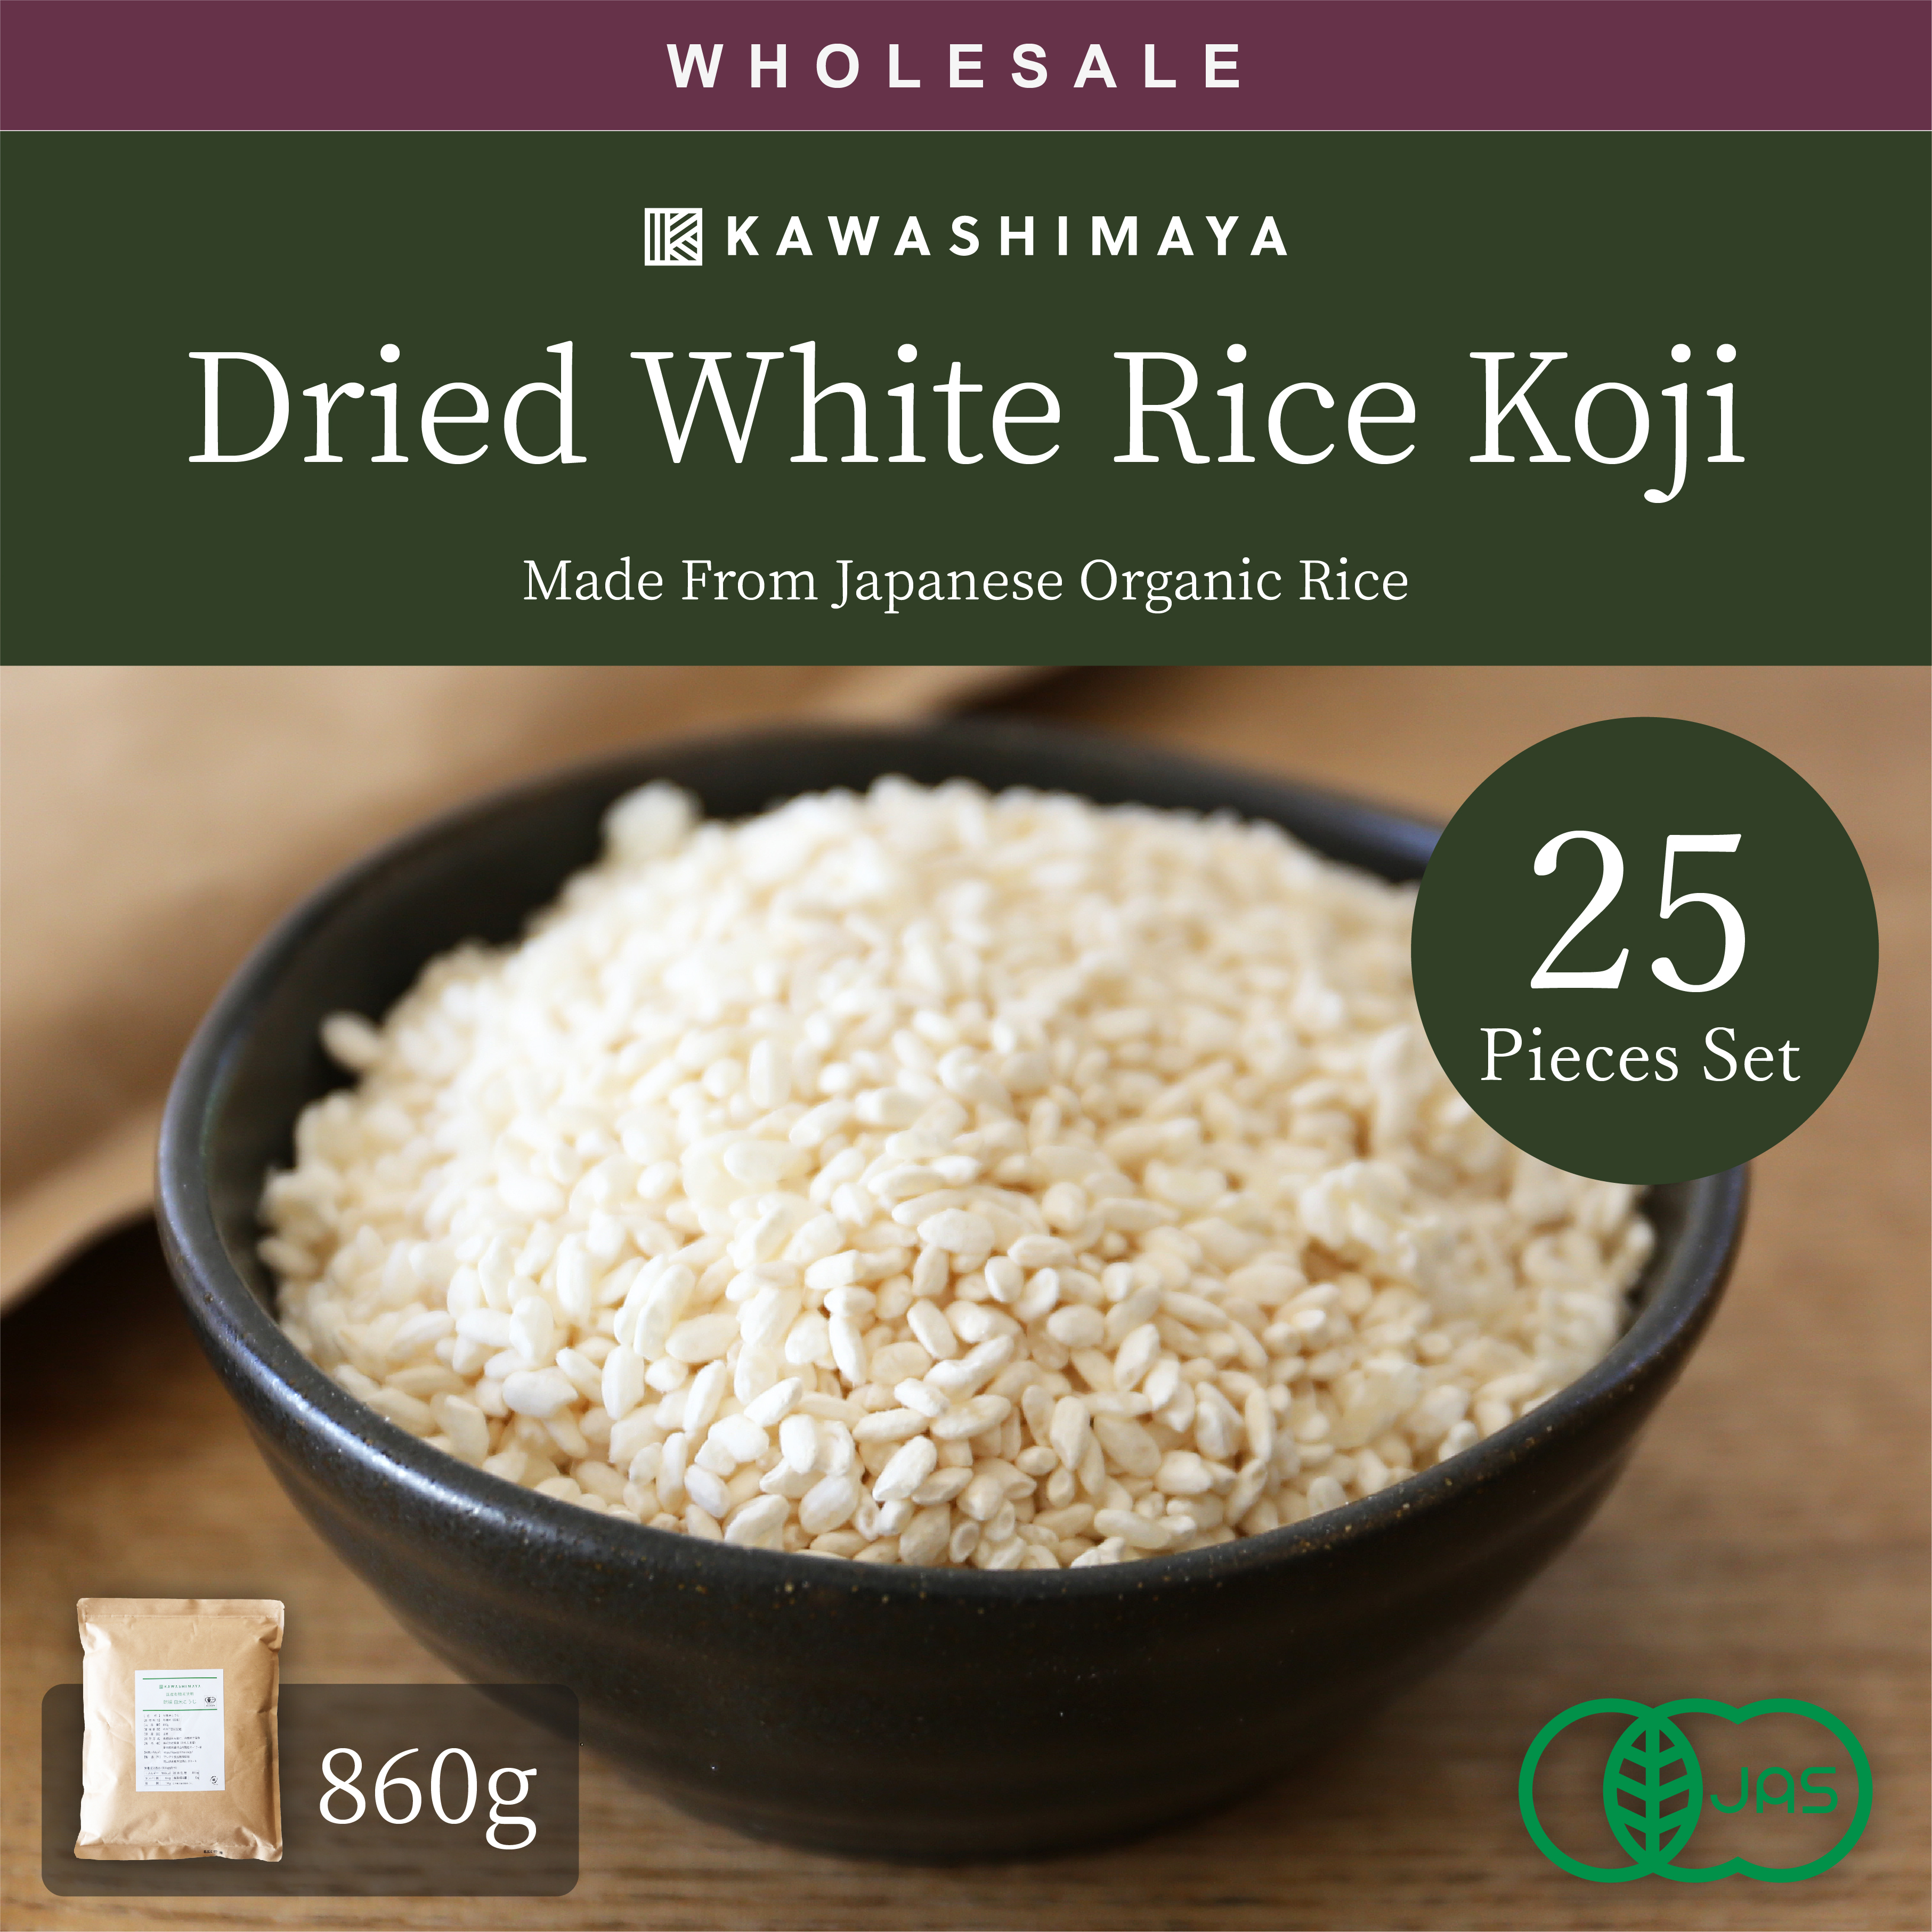 dried white rice koji